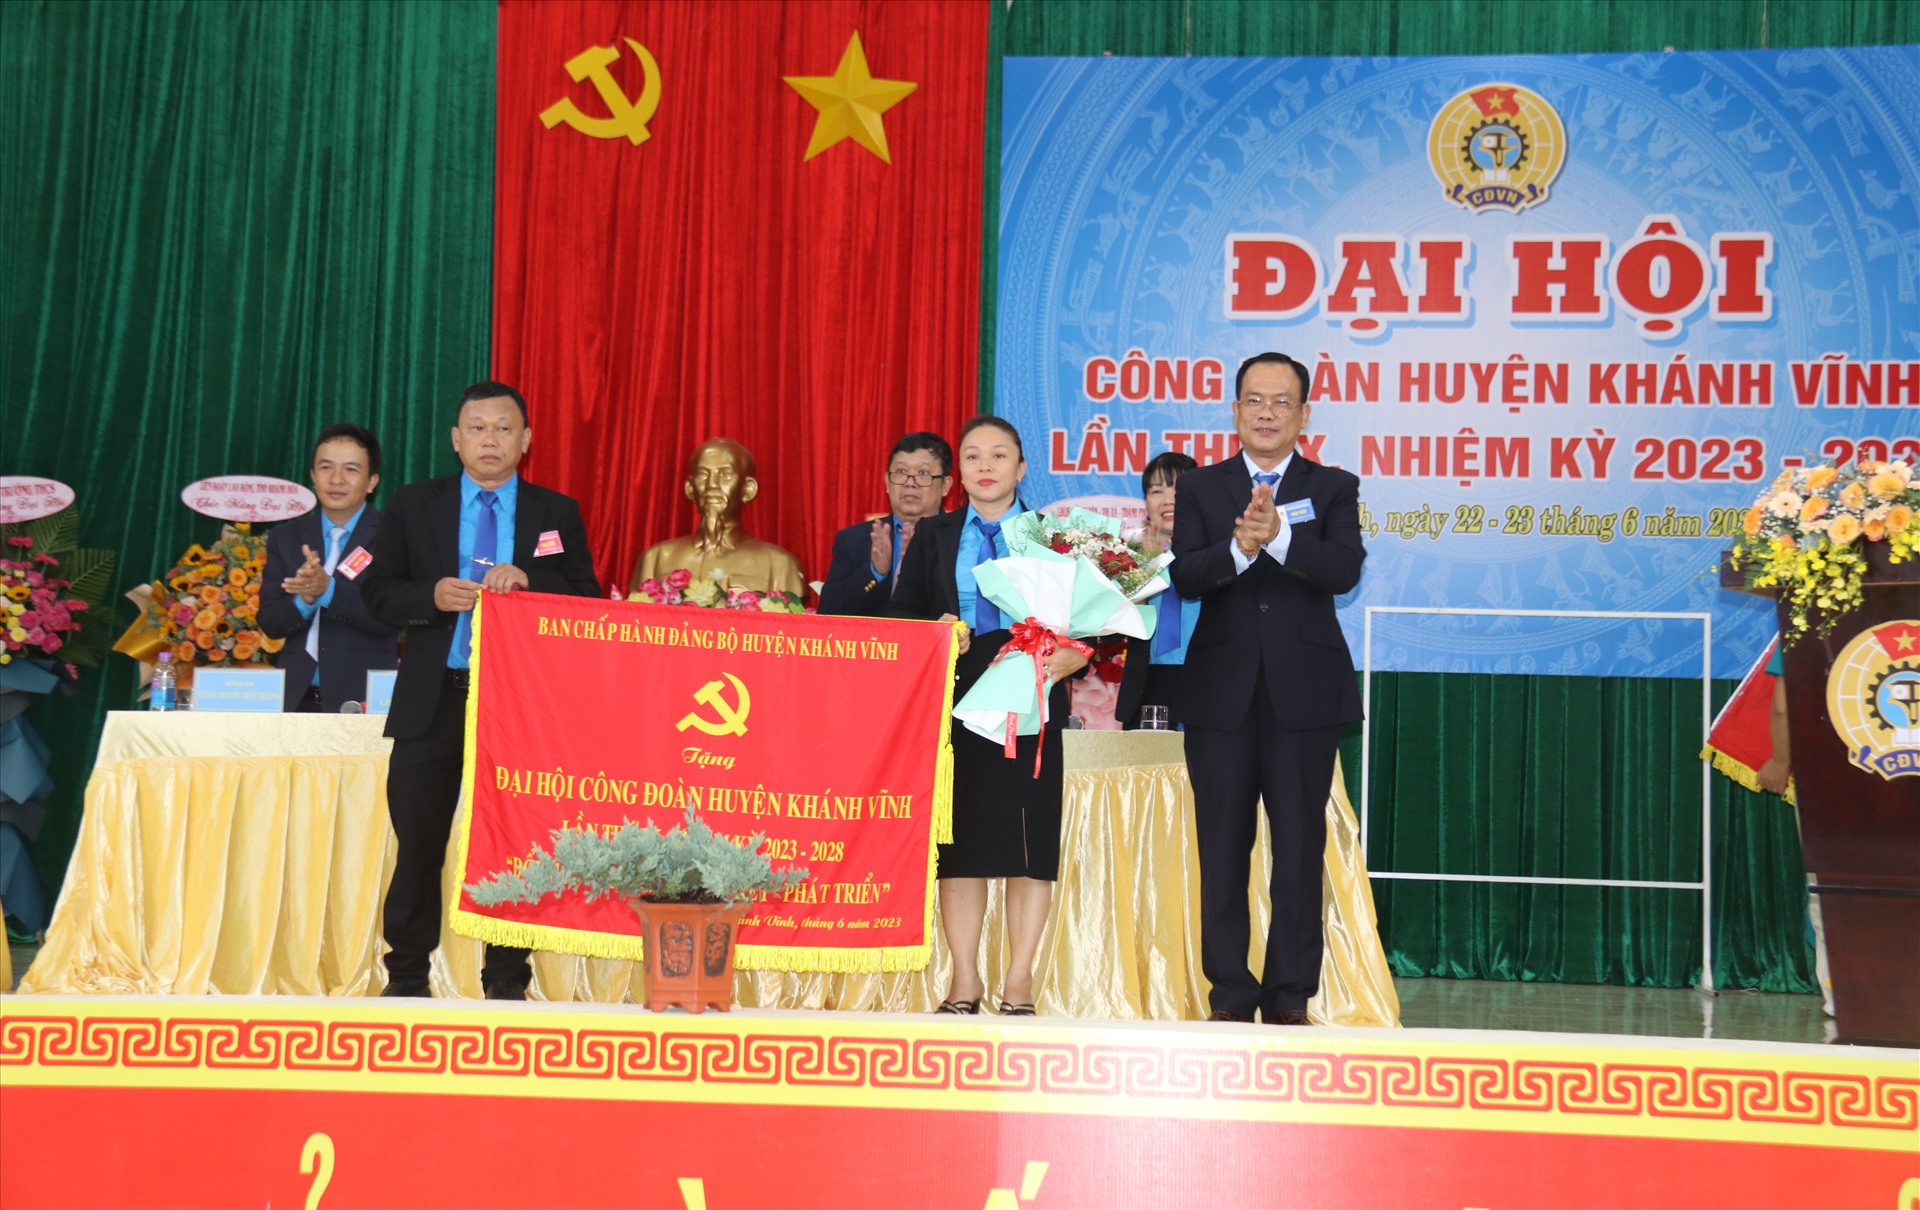 Lãnh đạo huyện ủy Khánh Vĩnh tặng bức trướng chúc mừng đại hội. Ảnh: Phương Linh